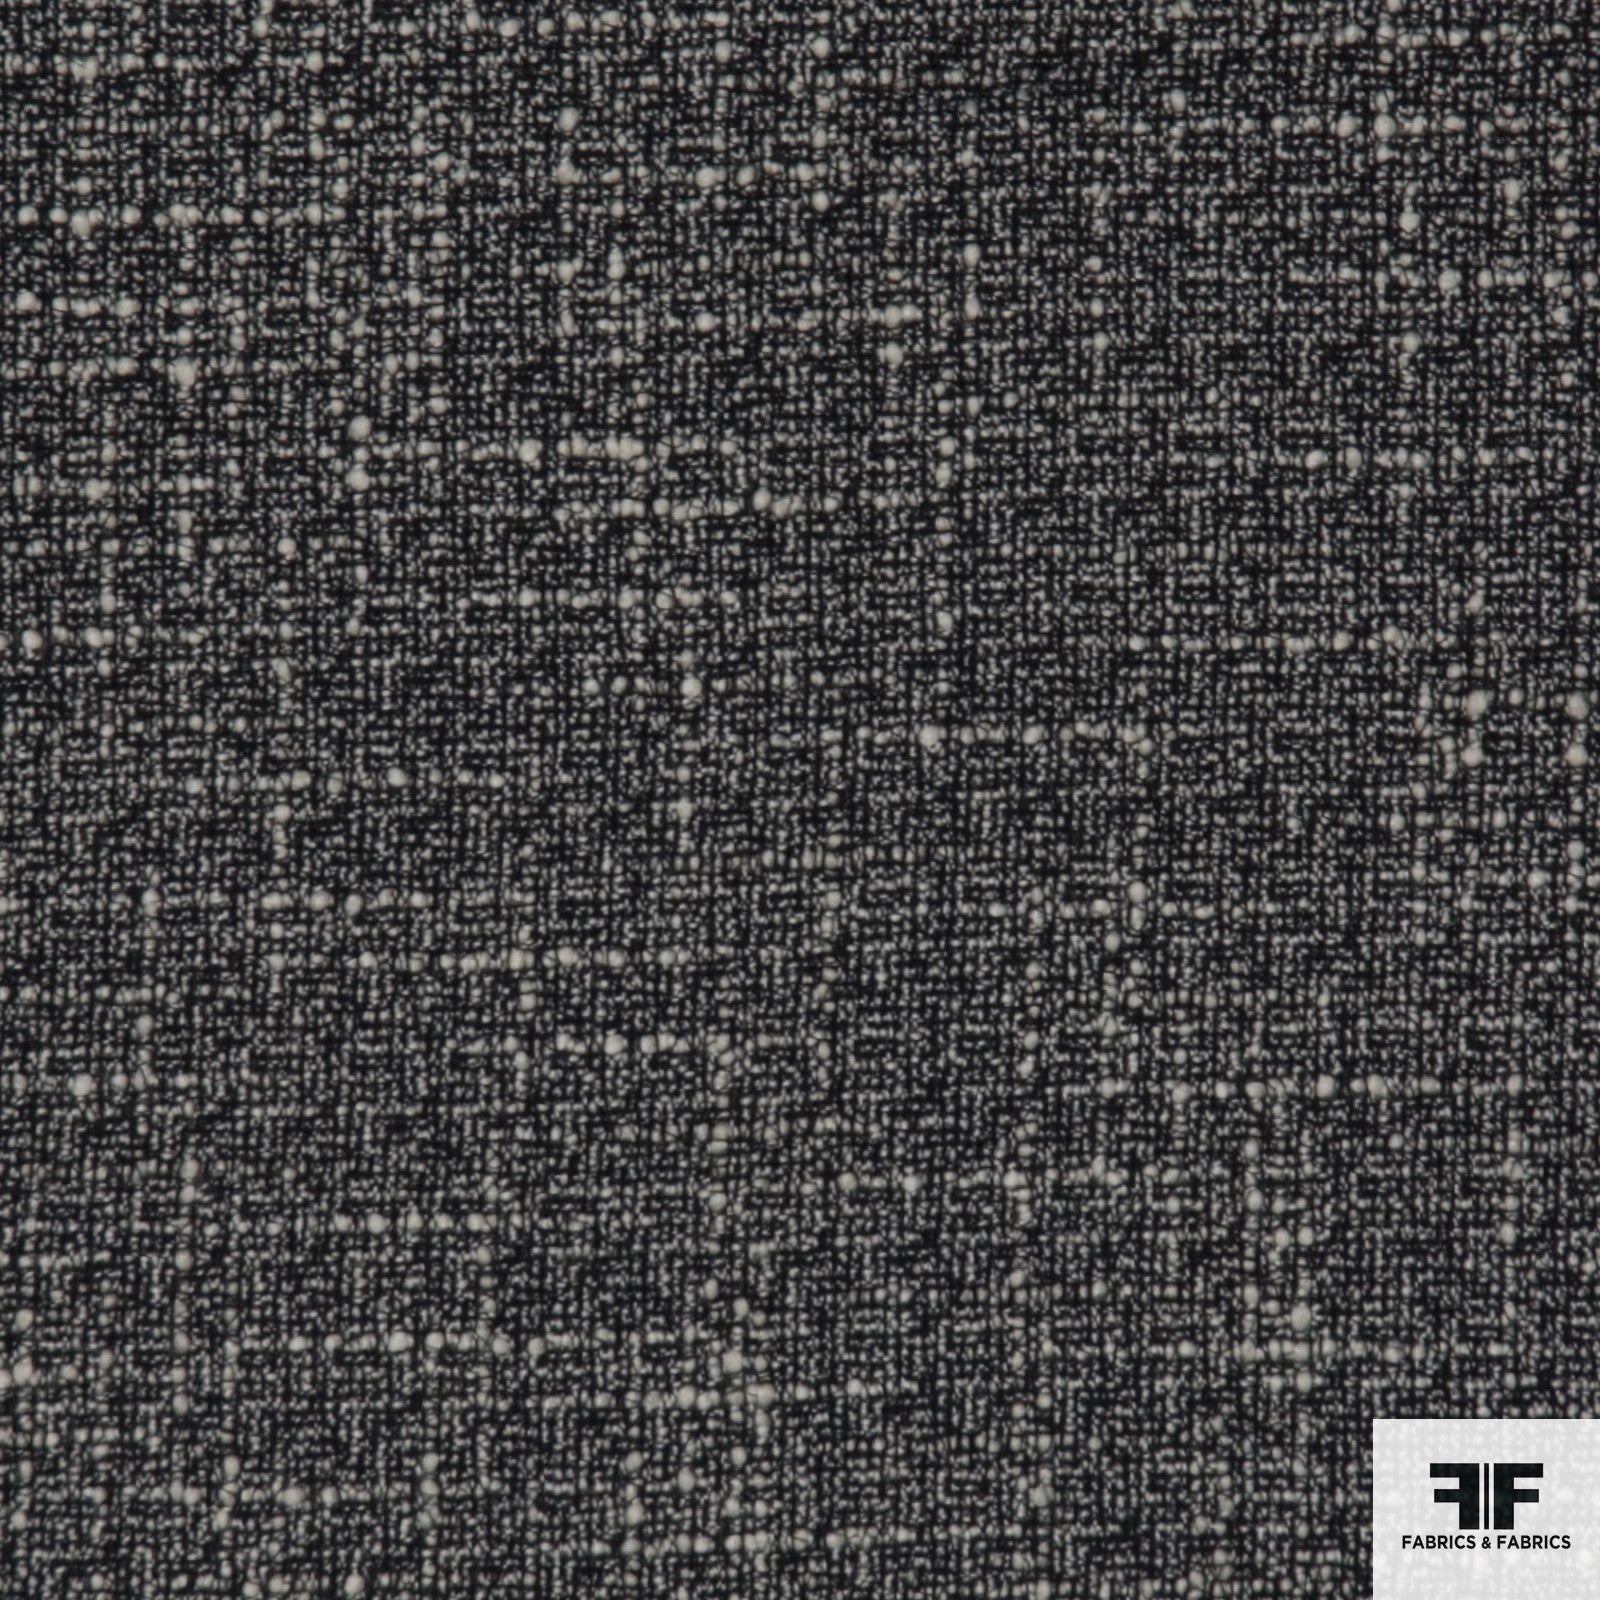 Wool Tweed - Black/Ivory